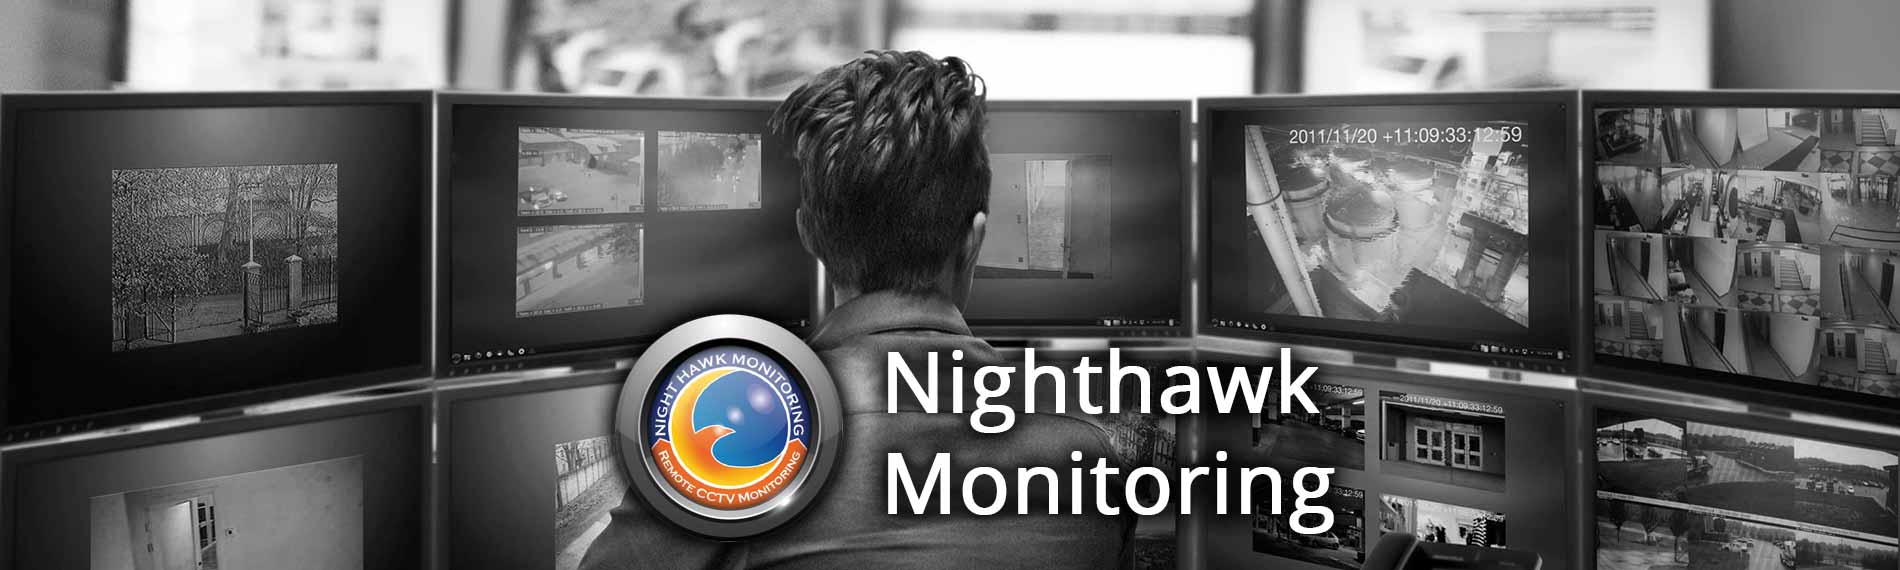 Remote Video Surveillance Santa Barbara CA - Santa Barbara Remote Video Surveillance Monitoring - Live Security Cameras Monitoring Santa Barbara CA